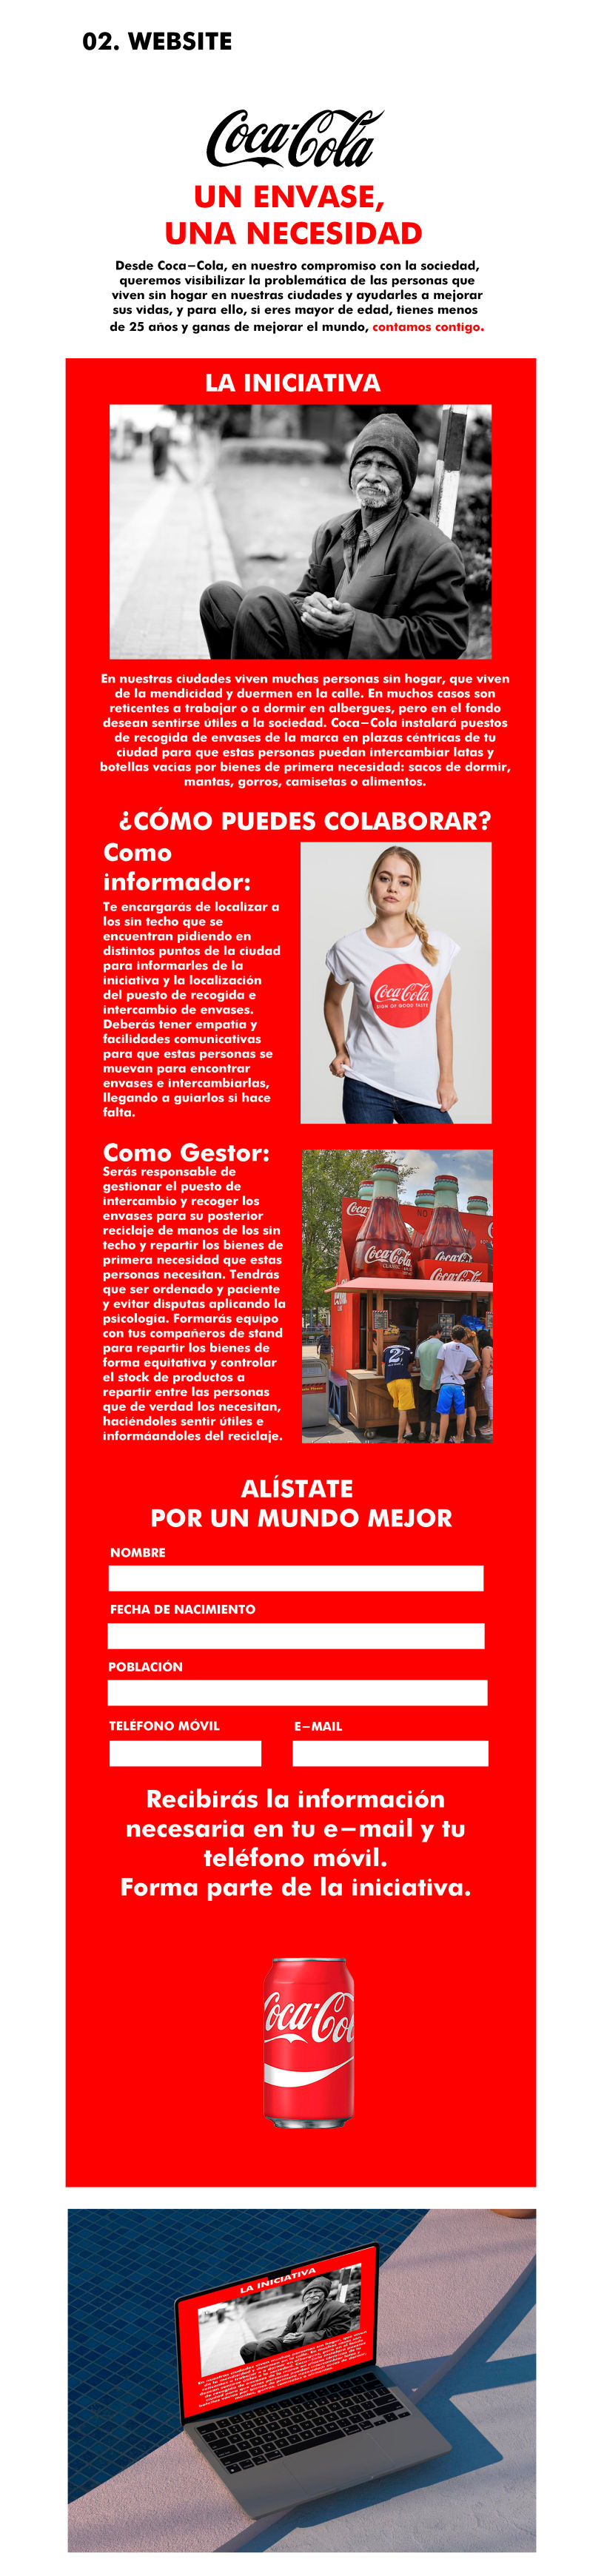 Campaña Coca-Cola 2